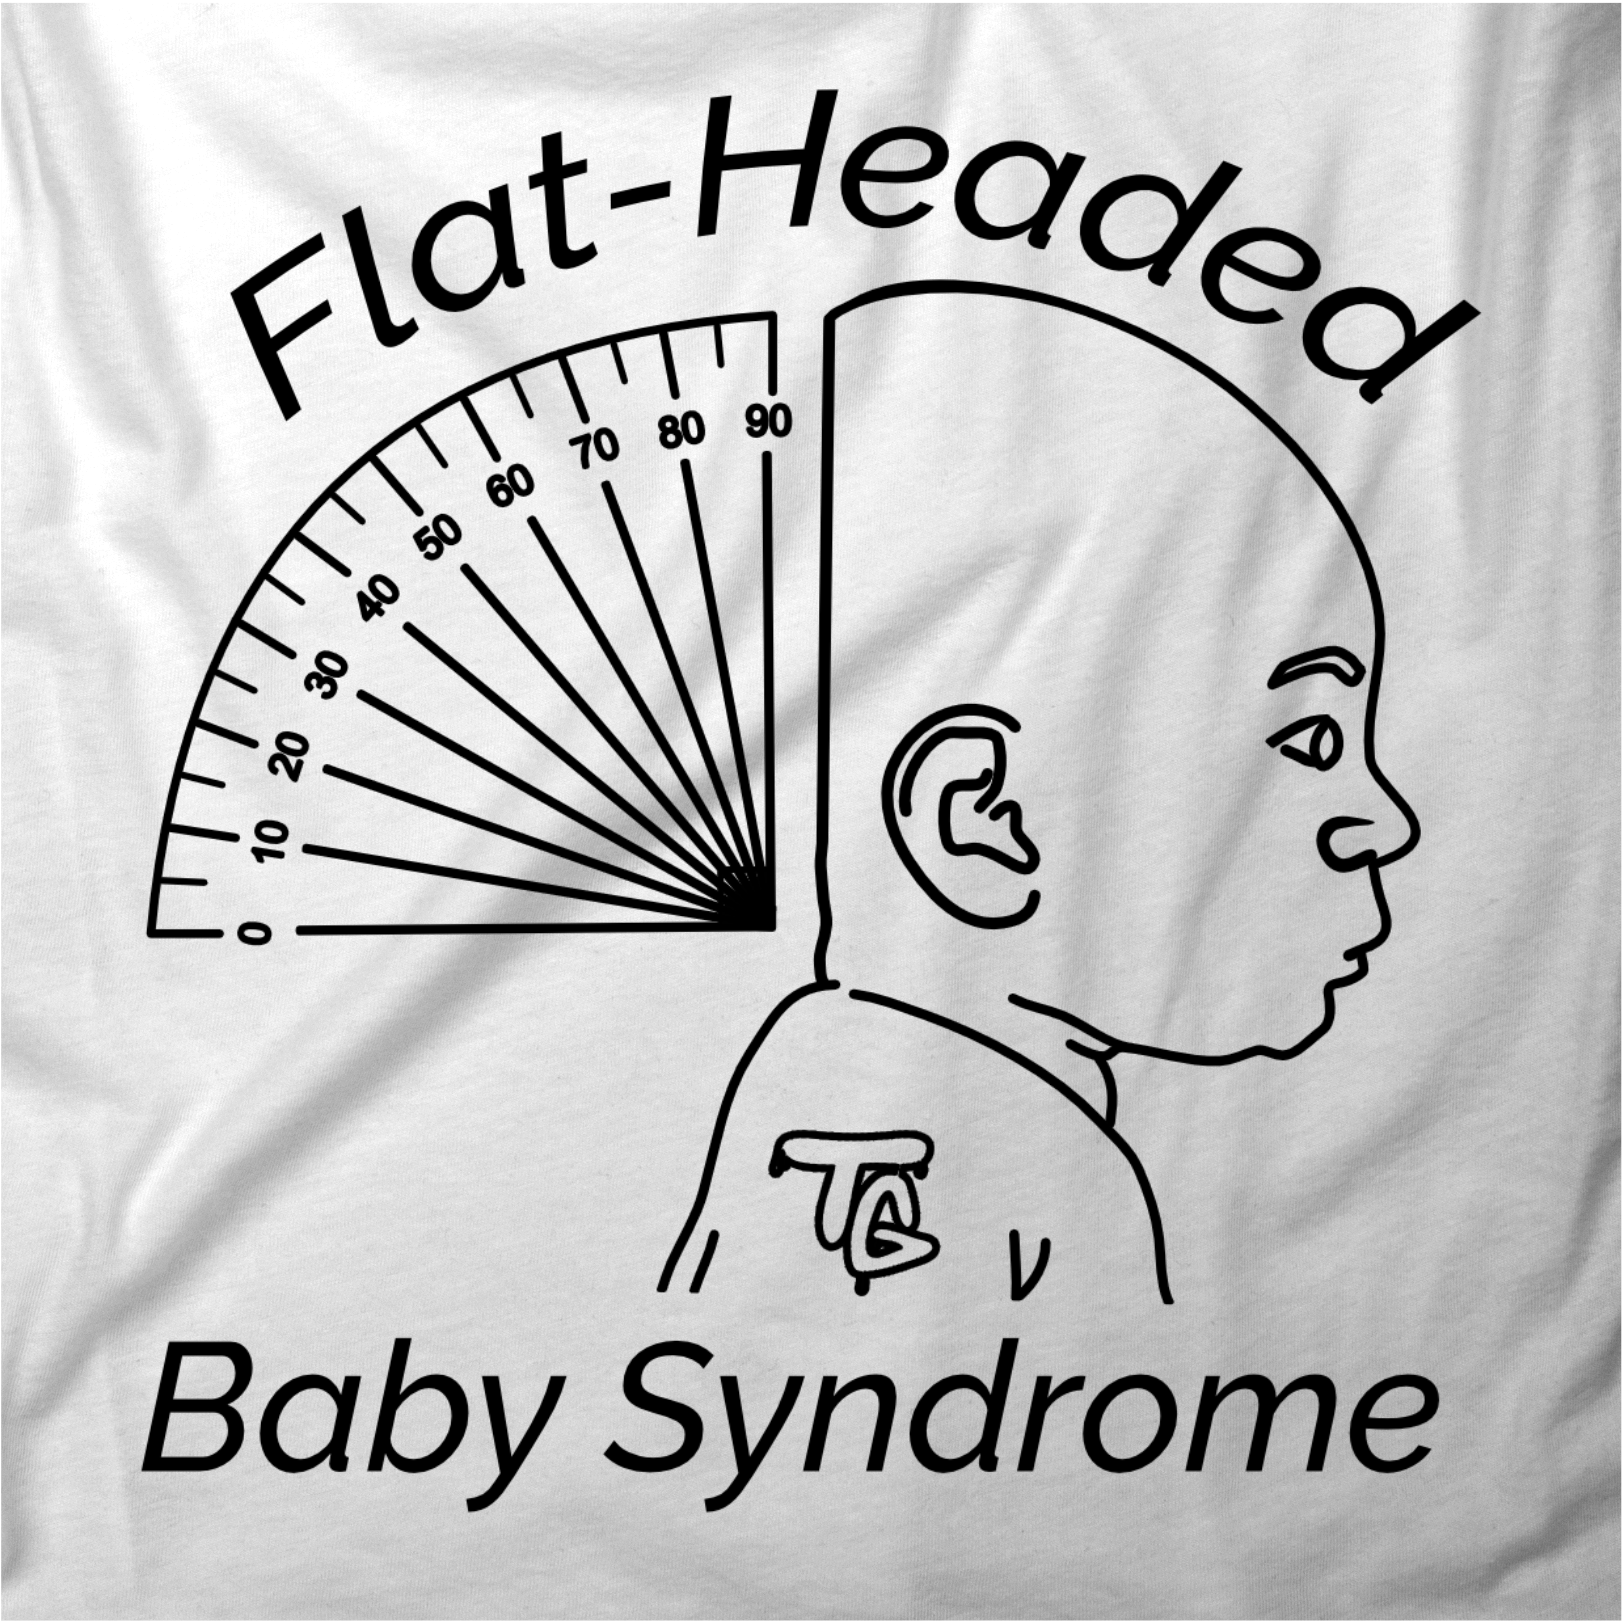 Flat-Headed Baby